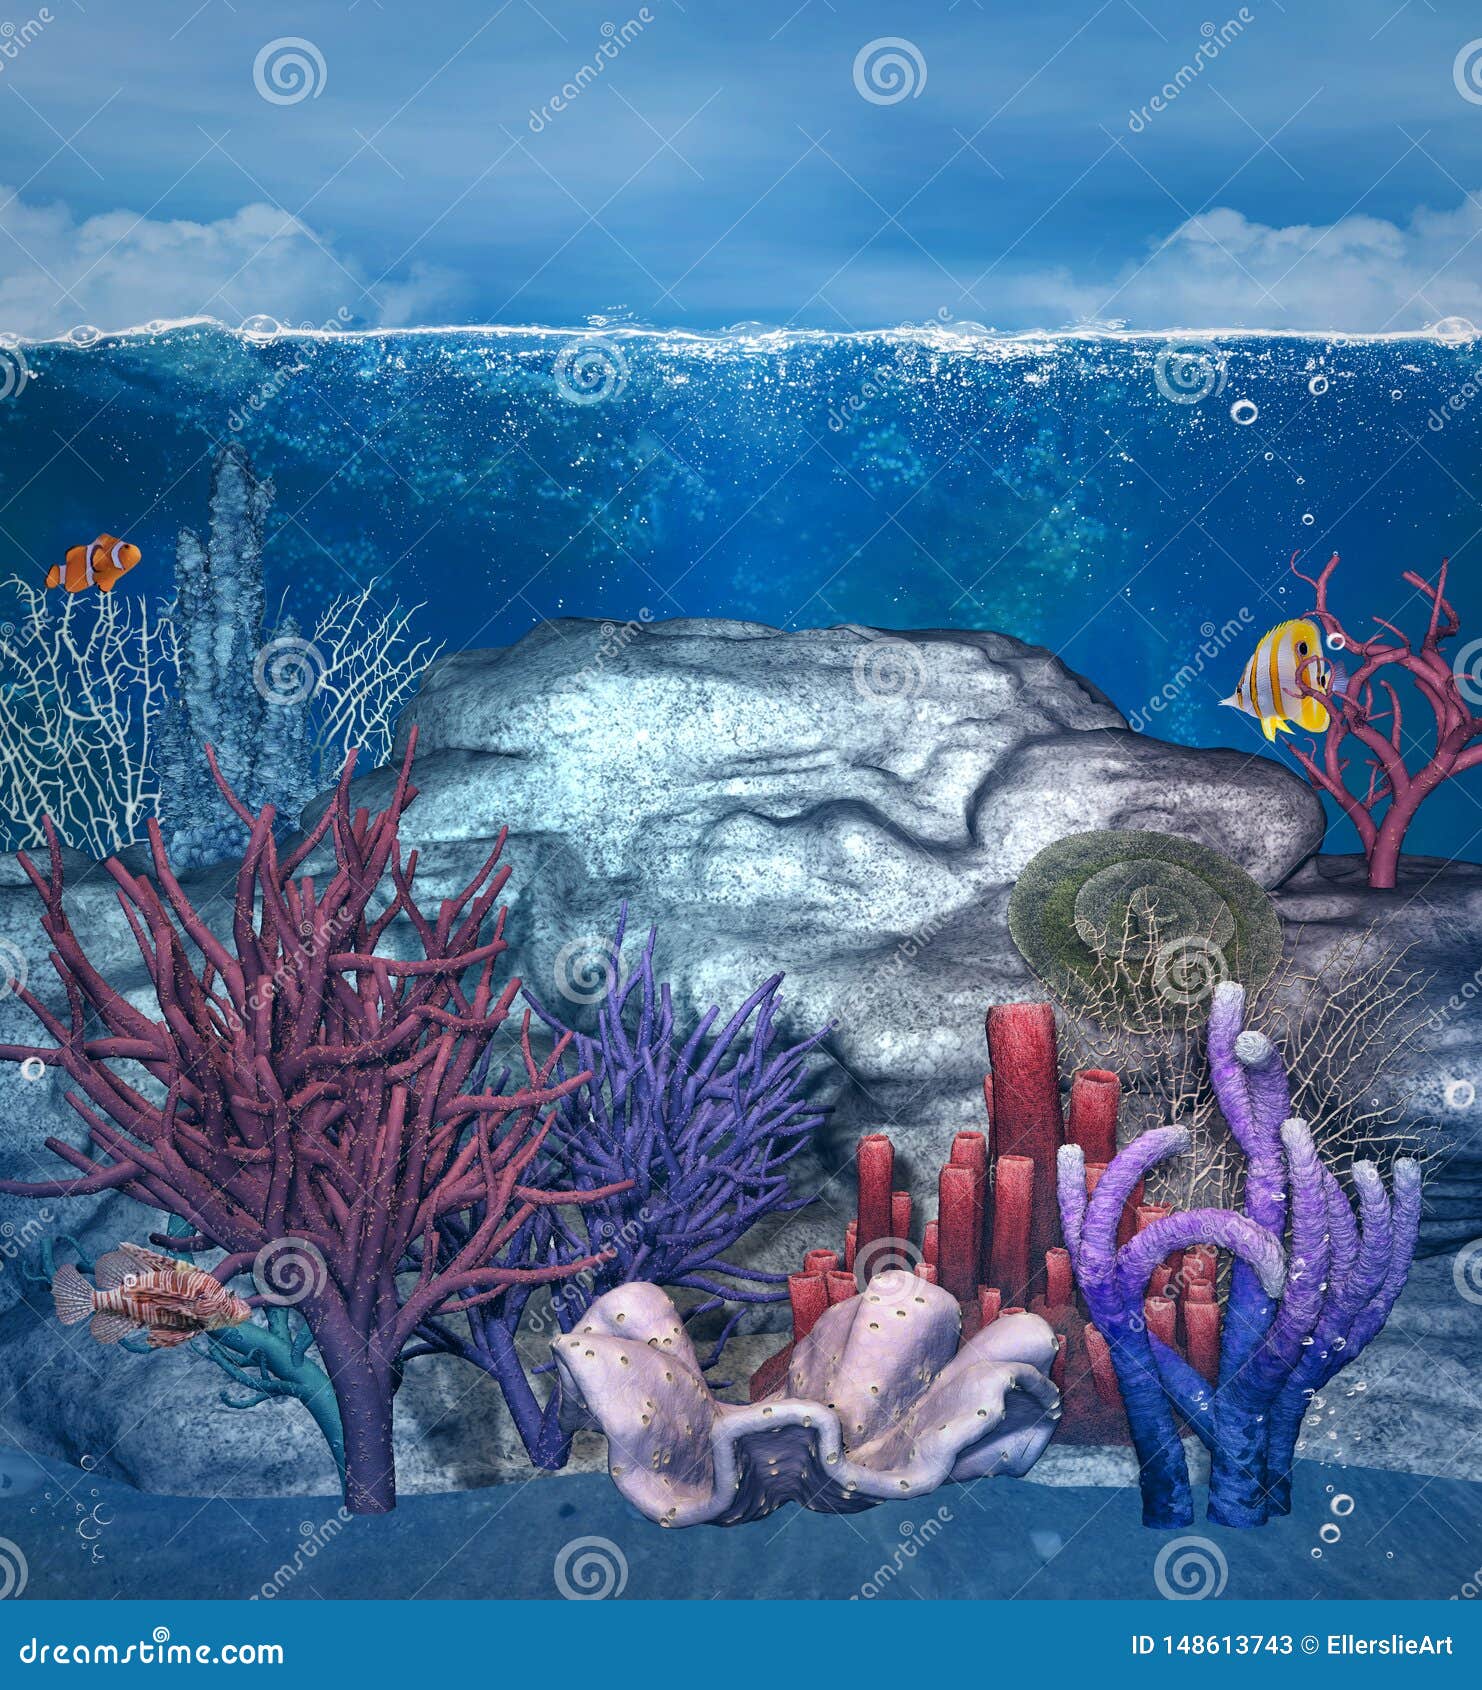 1500+] Ocean Wallpapers | Wallpapers.com